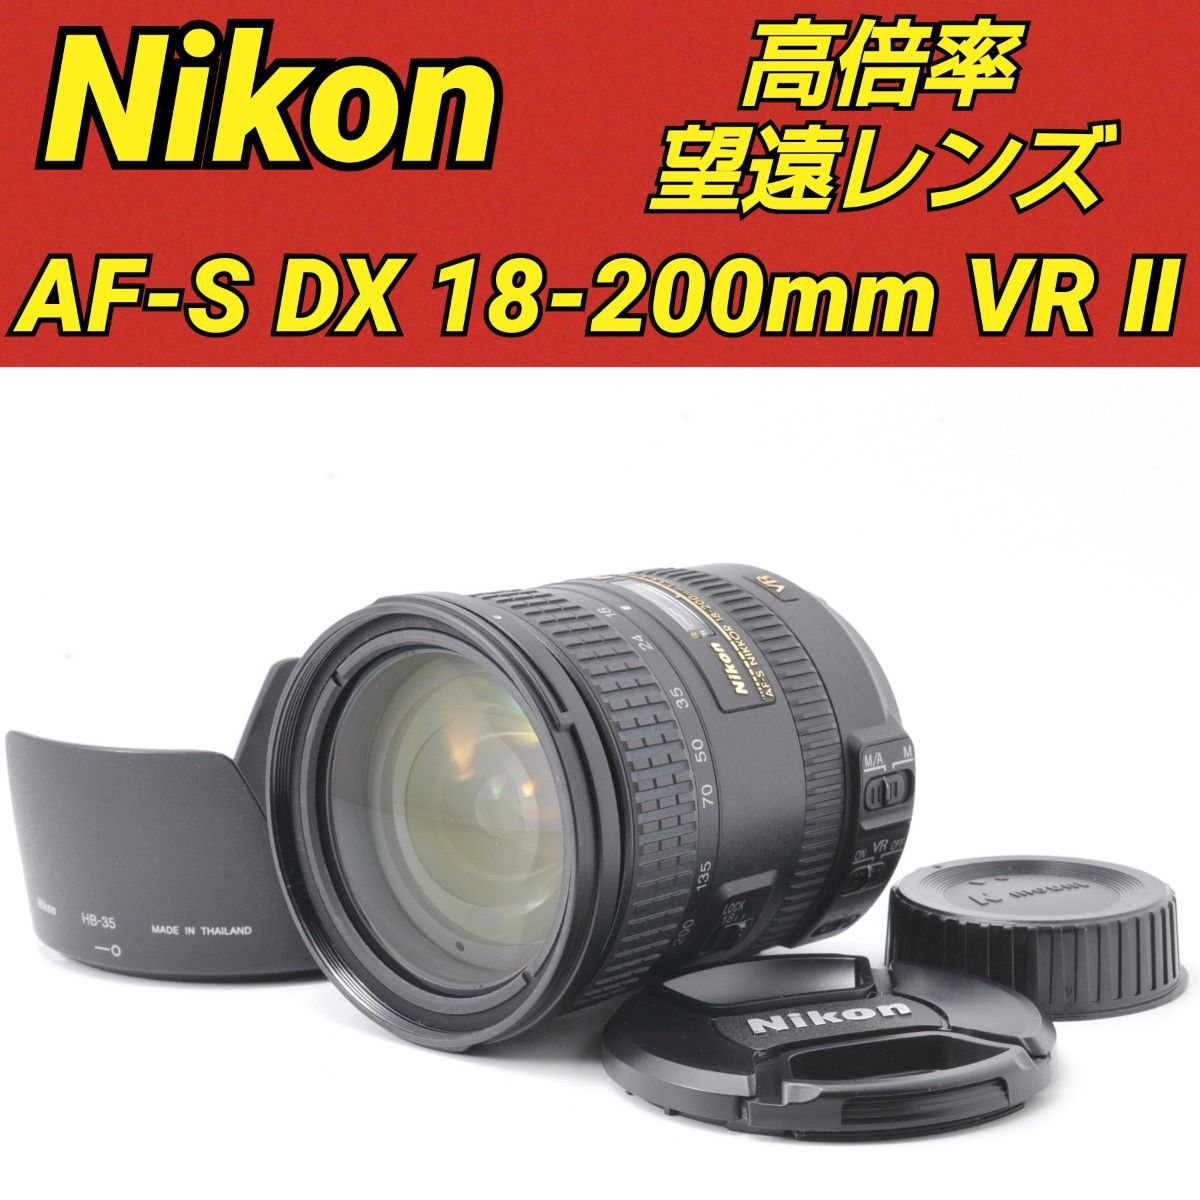 AF-S DX 18-200mm f3.5-5.6 G ED VR Ⅱ ニコン 手振れ補正付き NIKKOR Nikon